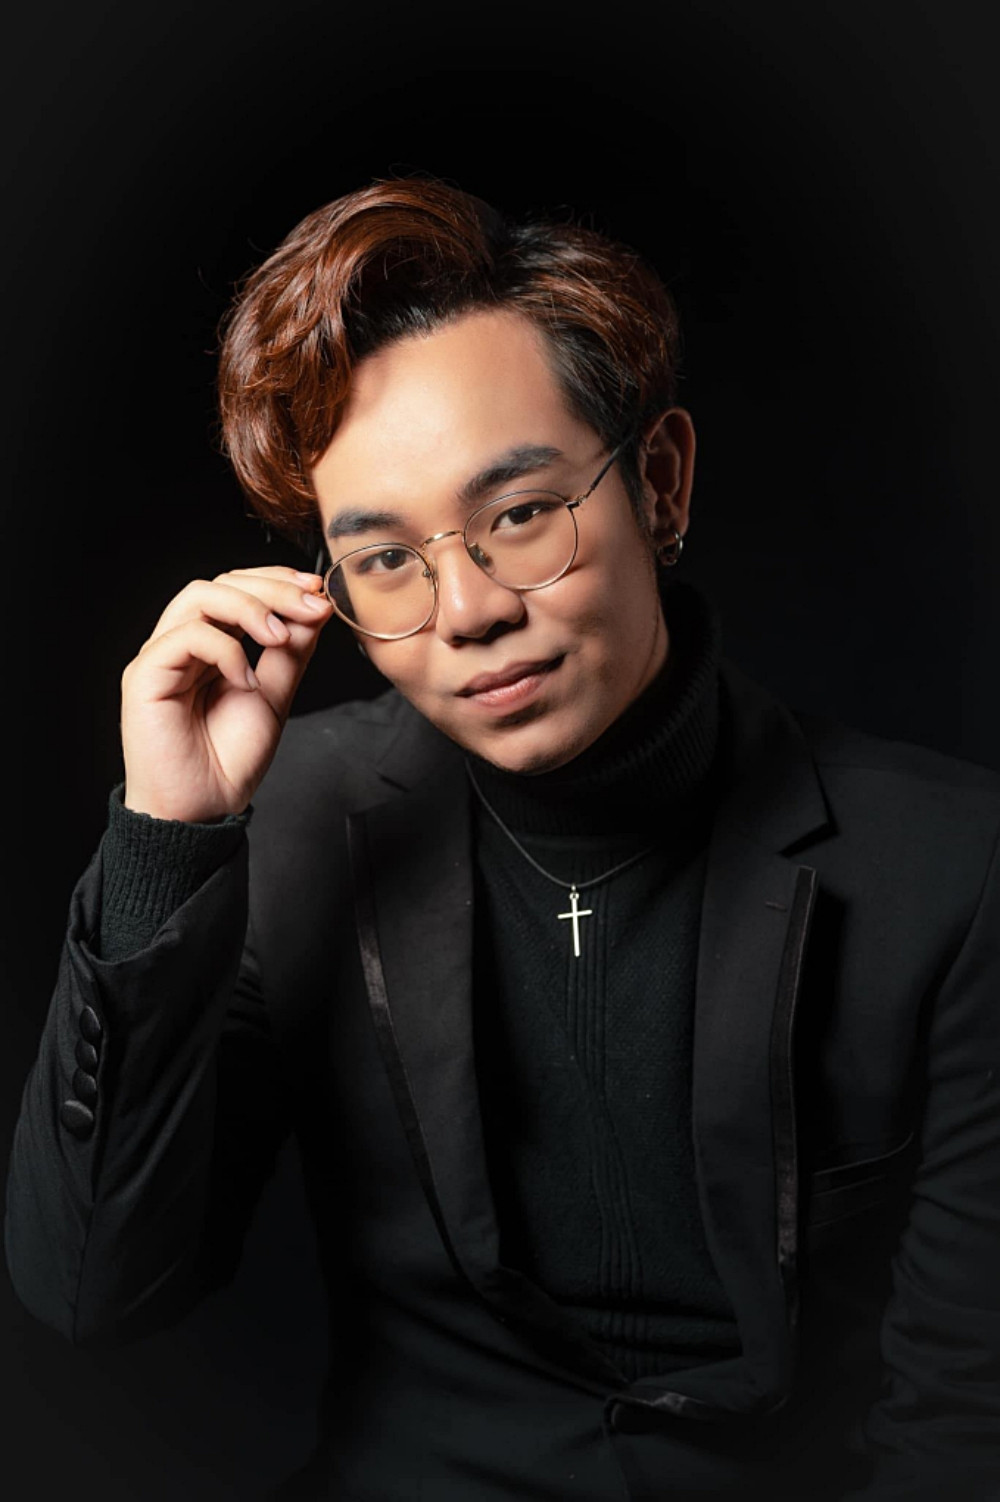 Cuộc sống hiện tại của 'Thần đồng âm nhạc' Bé Châu ở tuổi 27: Từng bị trầm cảm, loay hoay định hướng sự nghiệp và tên thật Nguyễn Huy - Ảnh 8